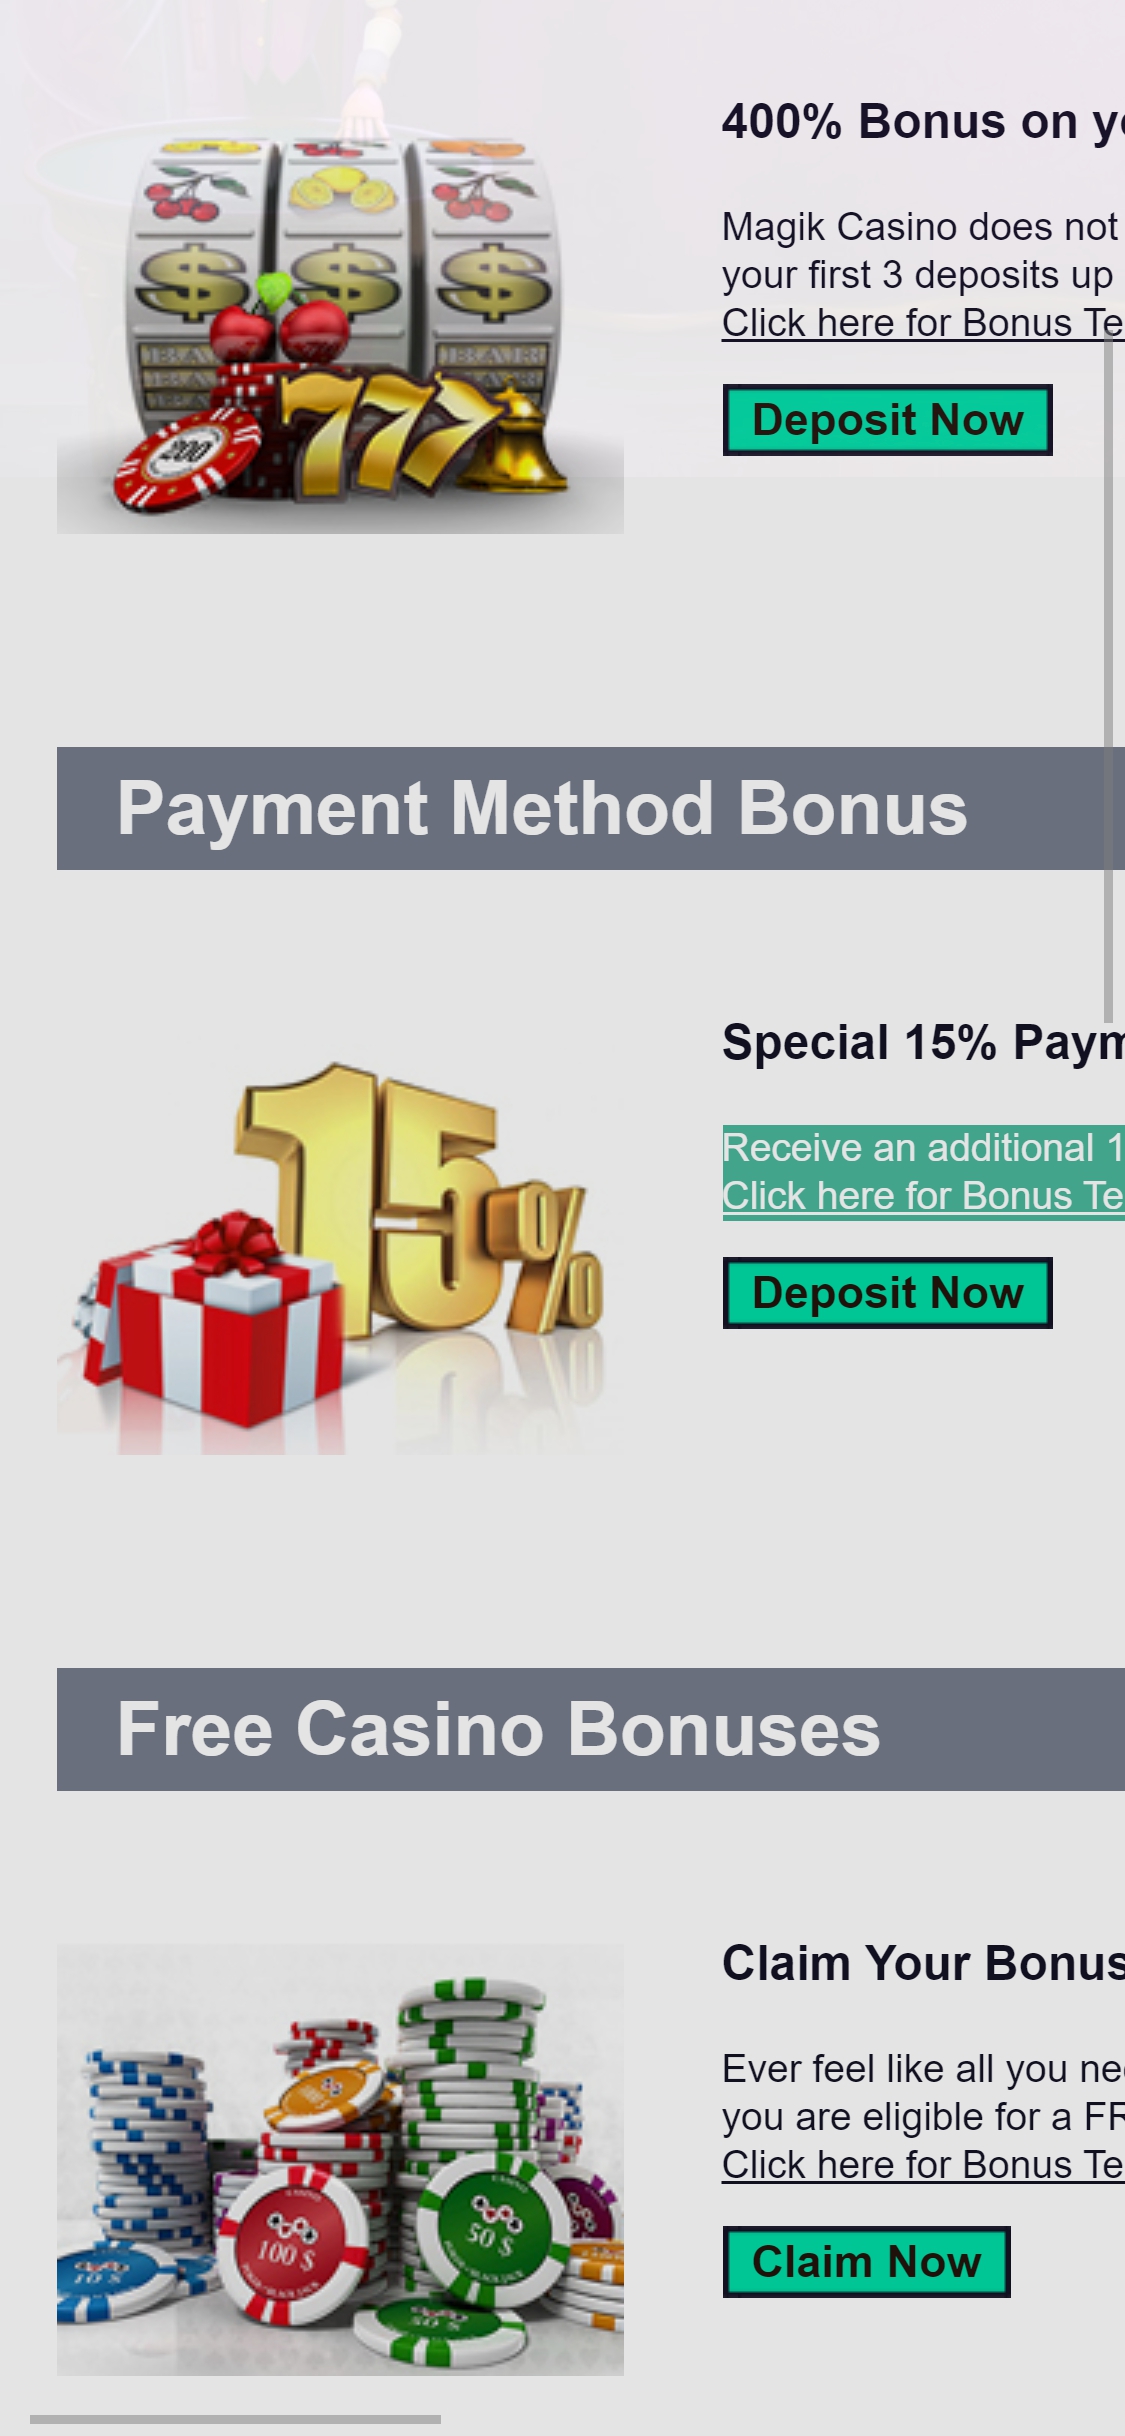 Magik Casino Mobile No Deposit Bonus Review